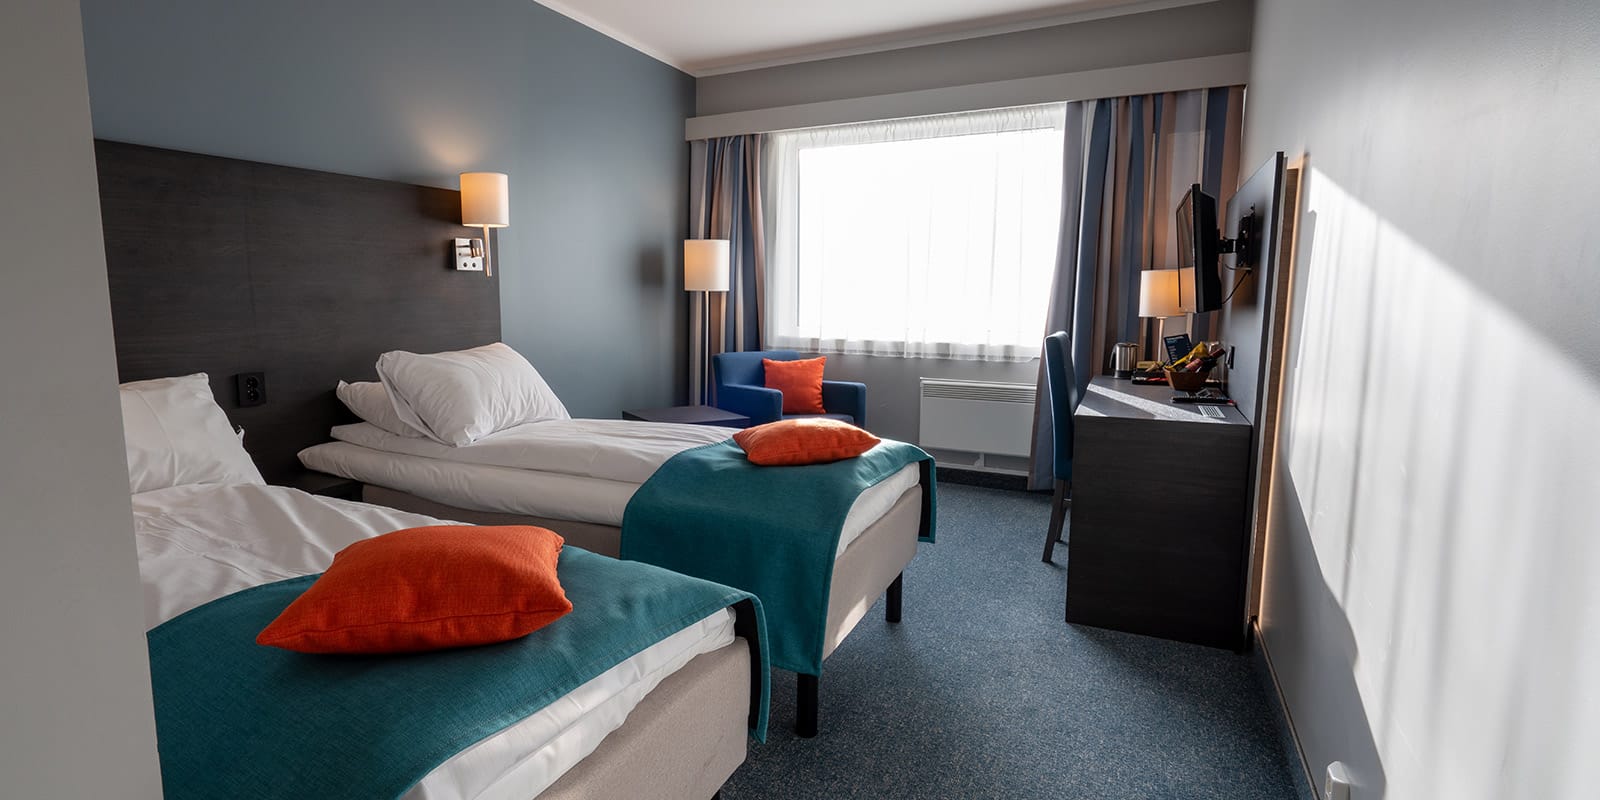 Två sängar i standardtwinrum på Hotel Måløy